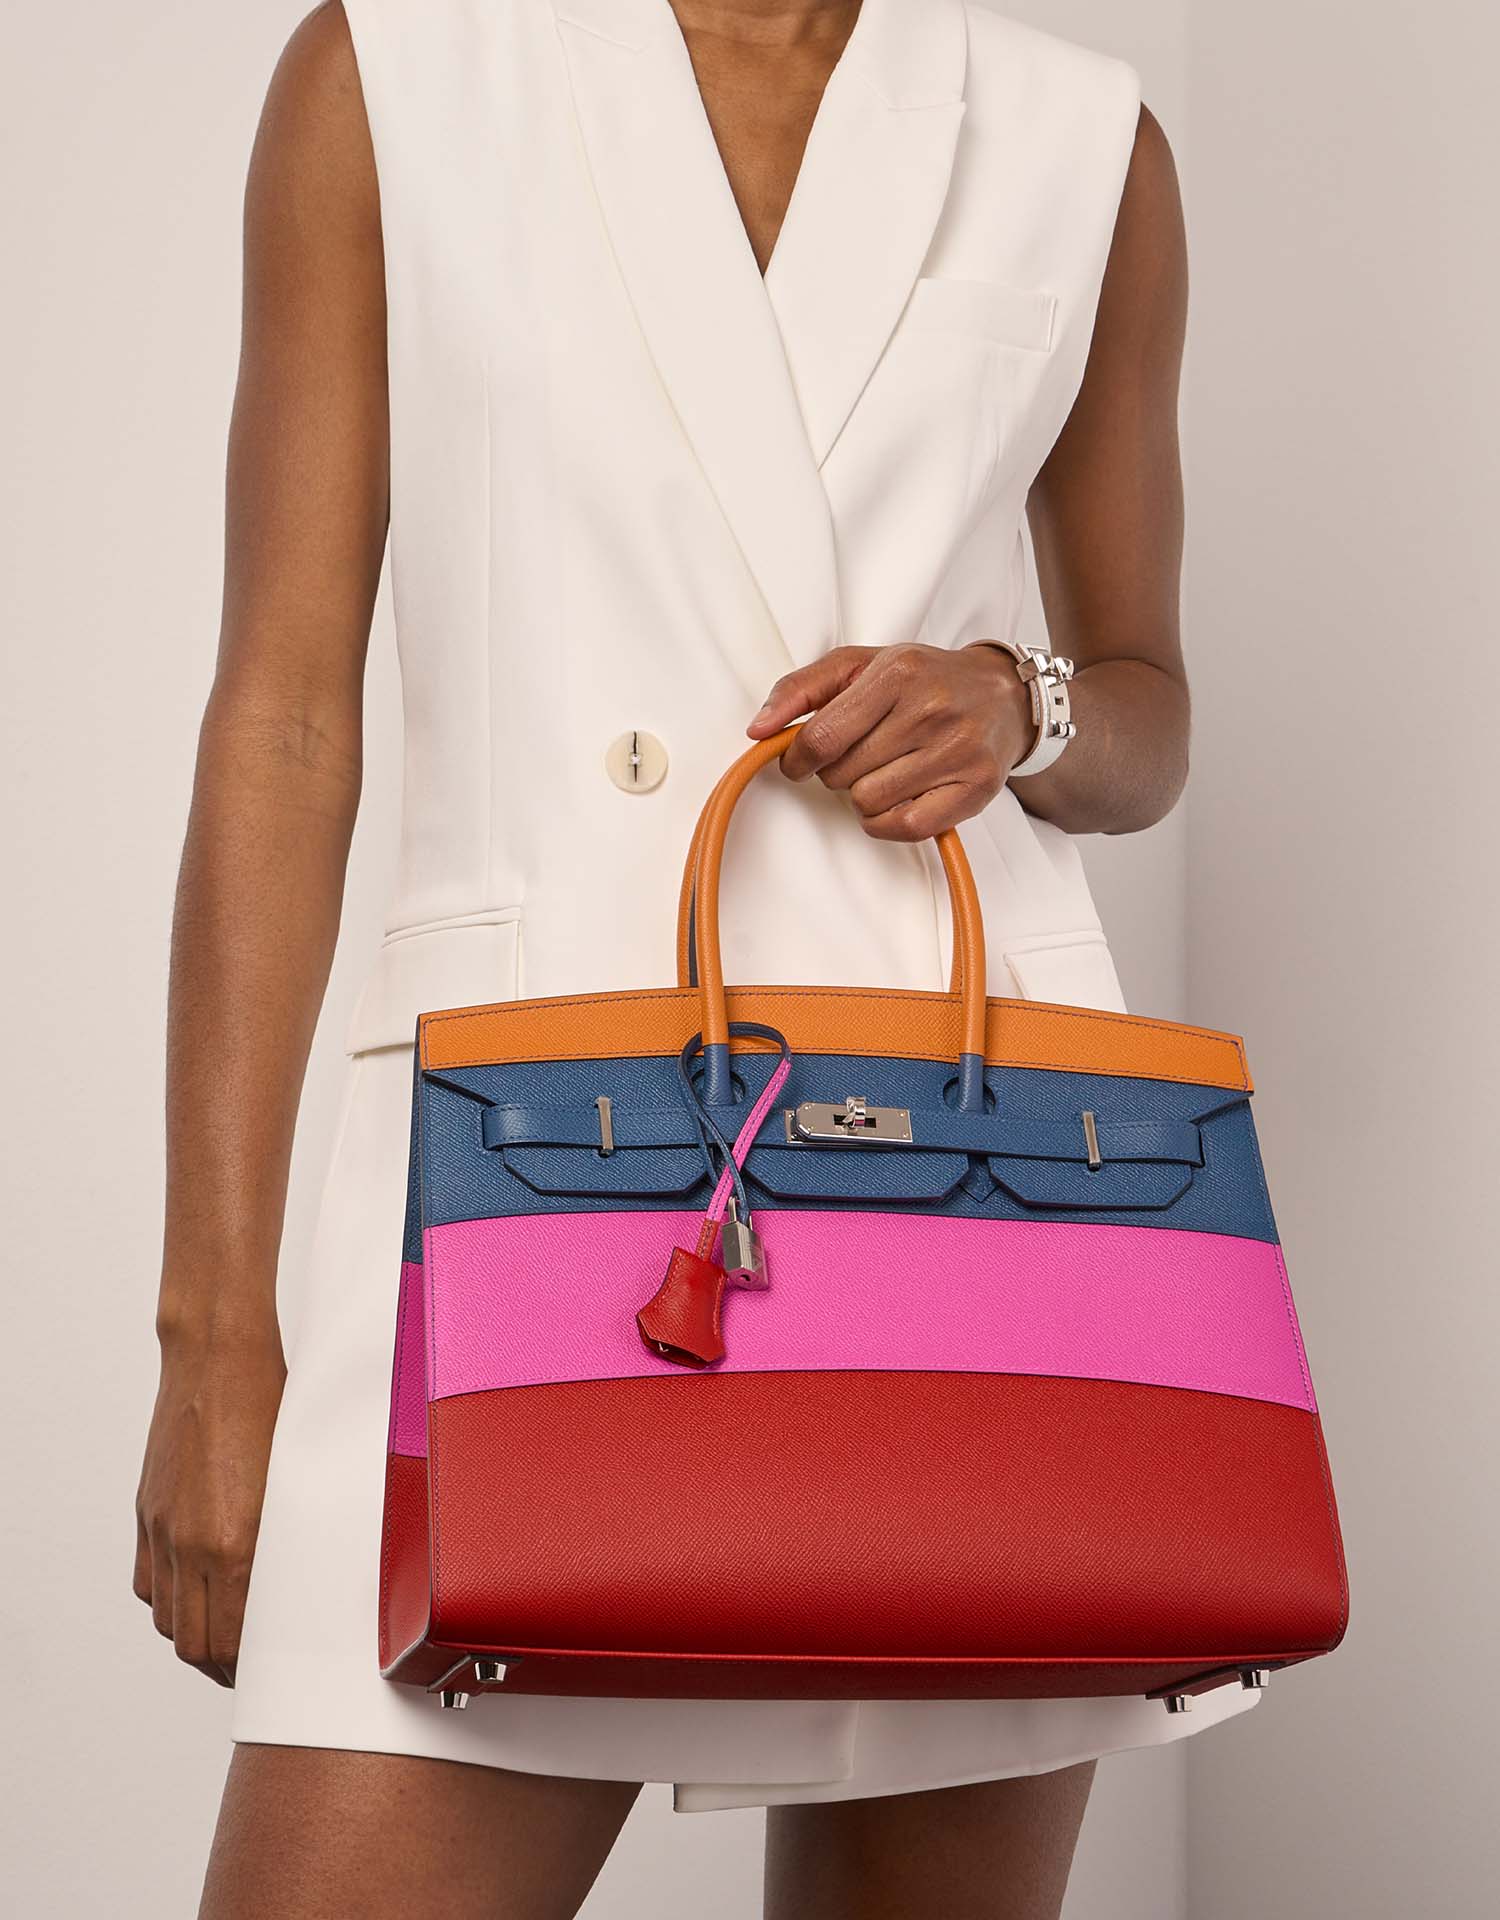 Hermès Birkin 35 Apricot-BlueAgate-Magnolia RougeCasaque Größen Getragen | Verkaufen Sie Ihre Designer-Tasche auf Saclab.com